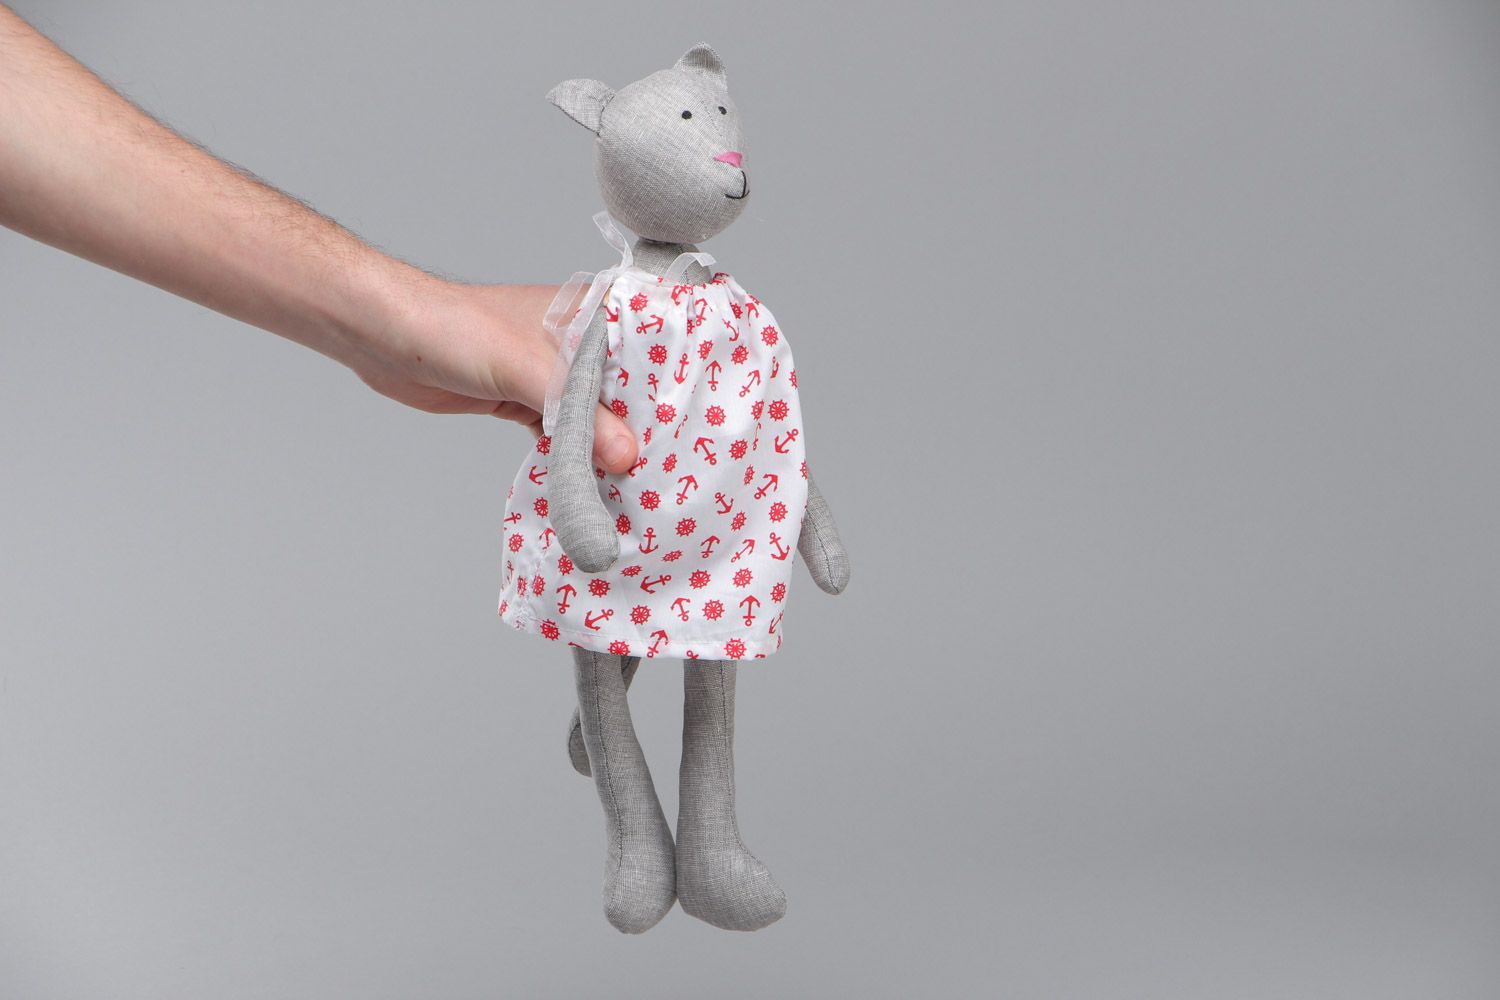 Мягкая текстильная игрушка кошечка в платье пошитая вручную из льна и хлопка фото 5